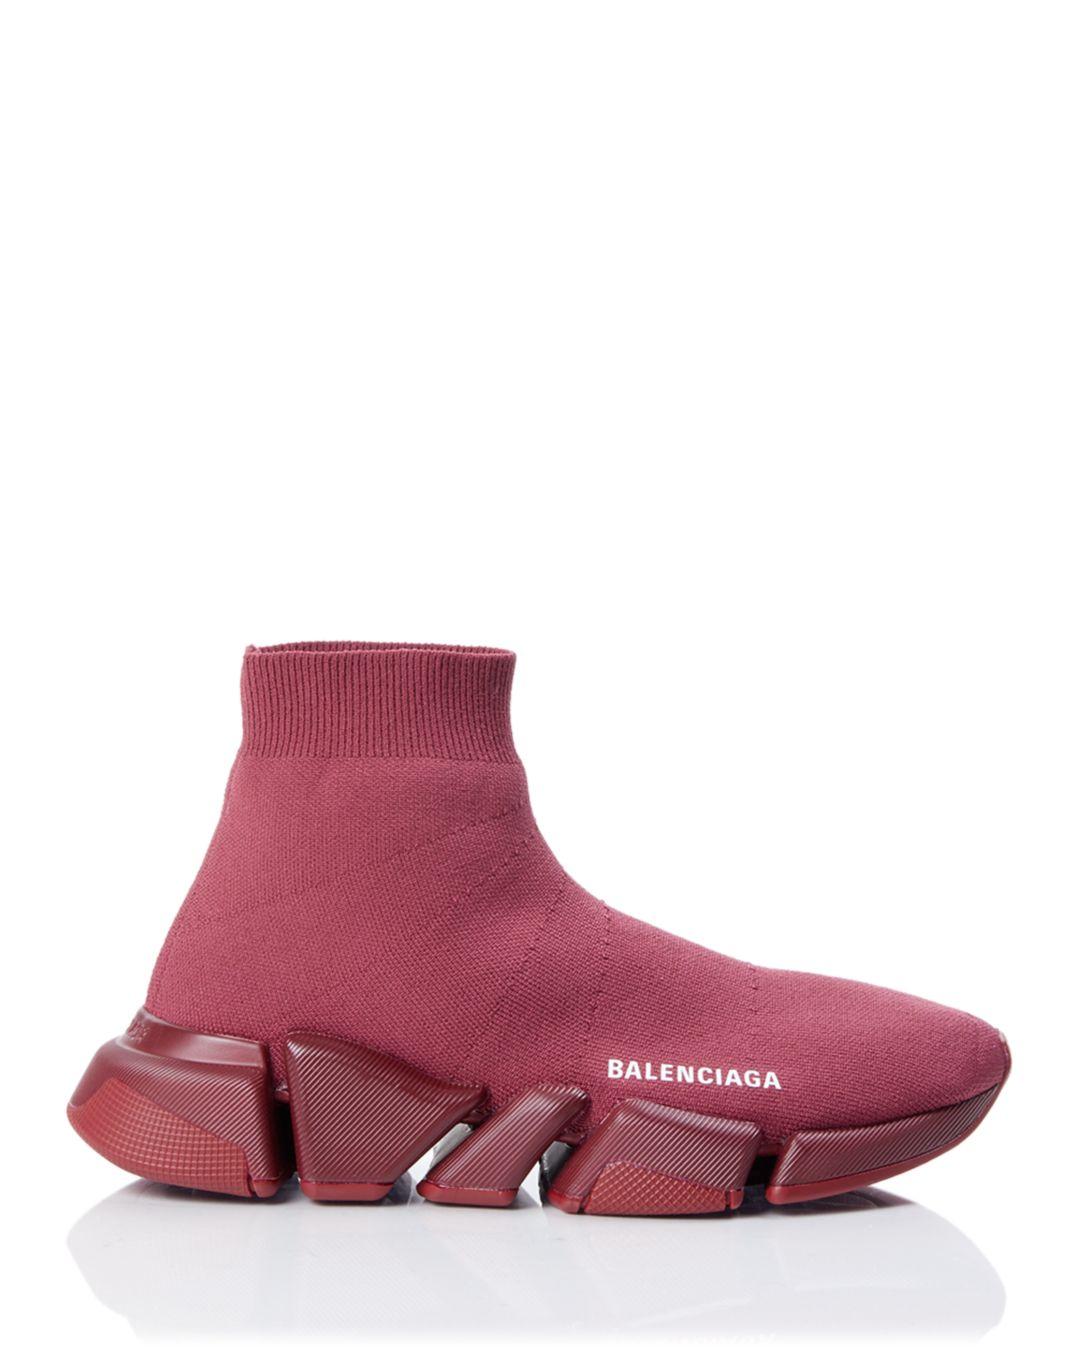 Balenciaga Women's Speed 2.0 Sock Sneakers in Dark Burgundy (Purple) - Lyst